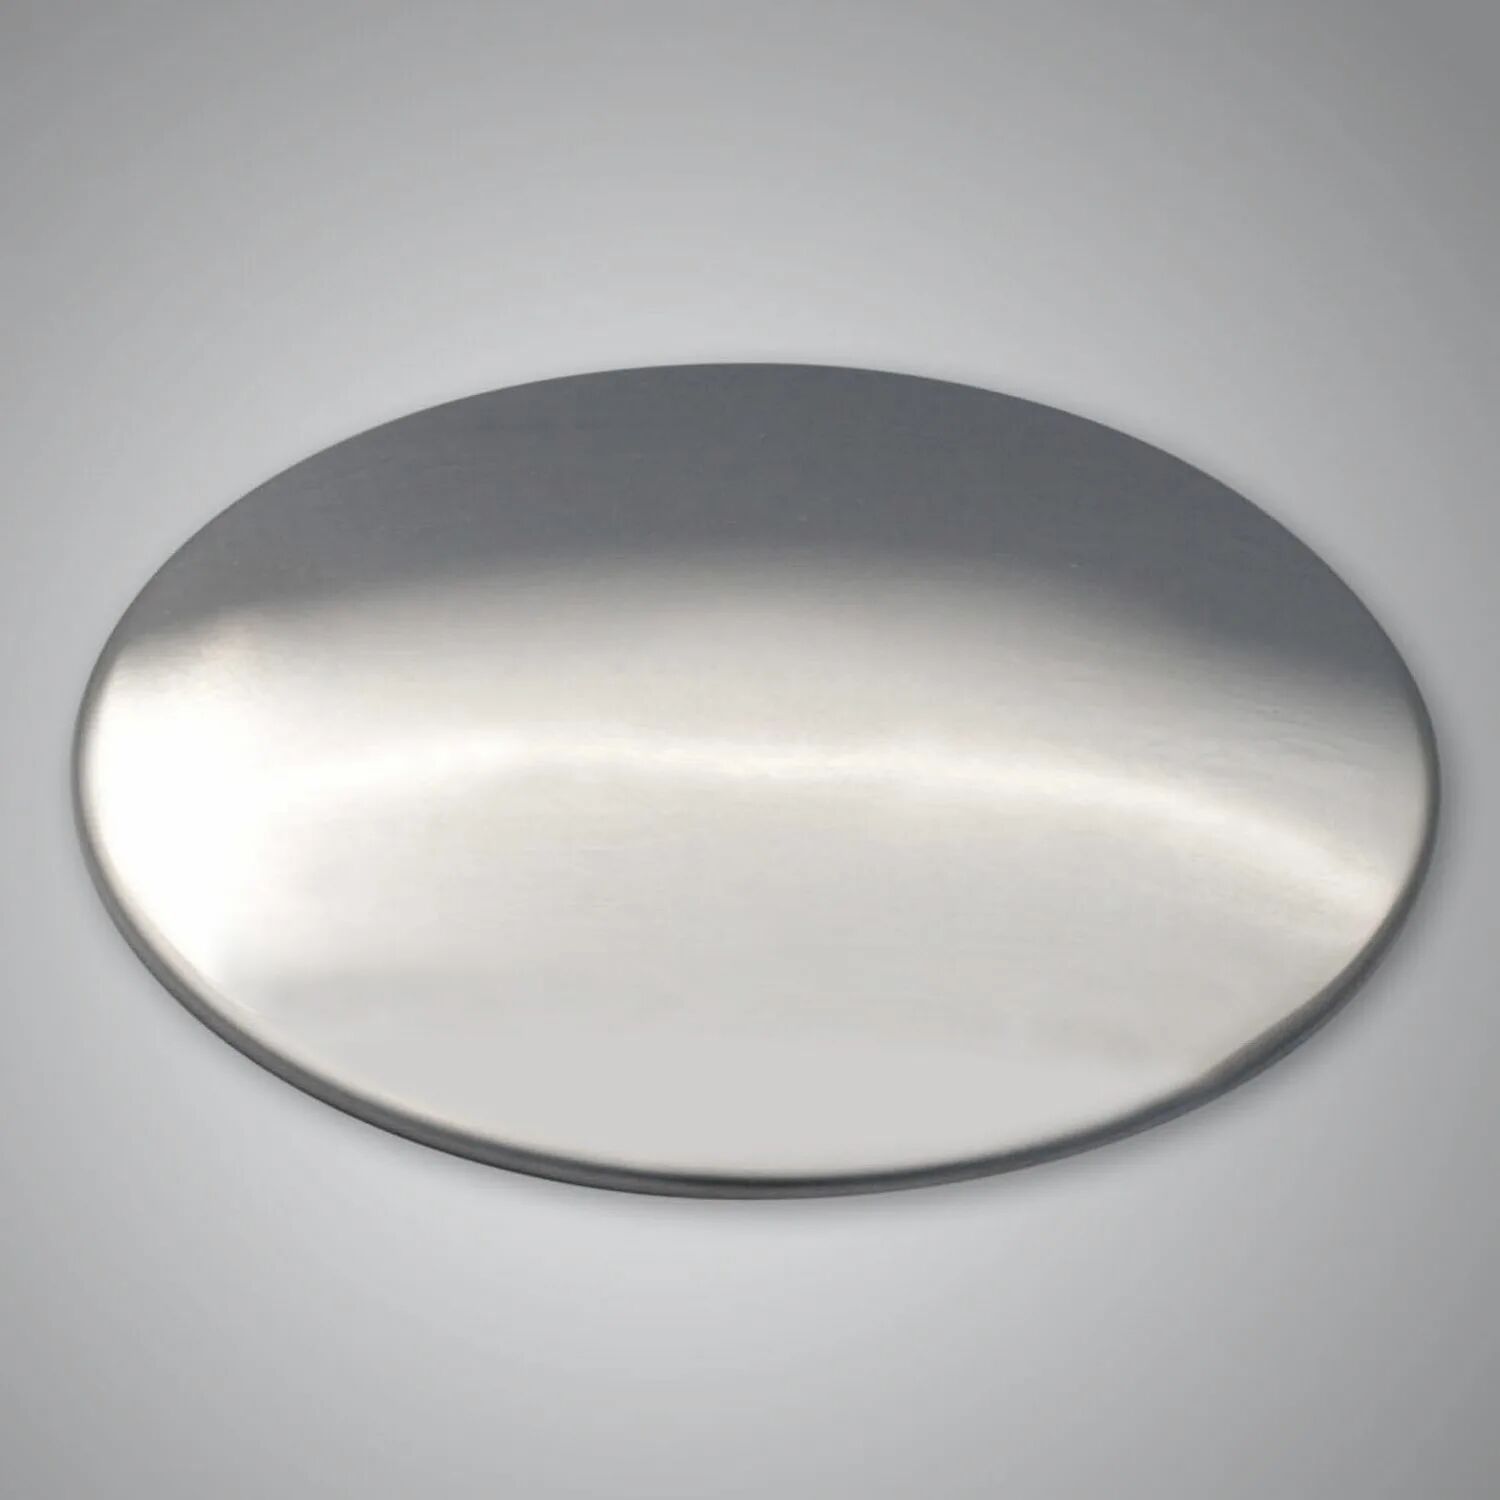 Systemceram Sink Cover serienübergreifend  edelstahl glänzend 0901